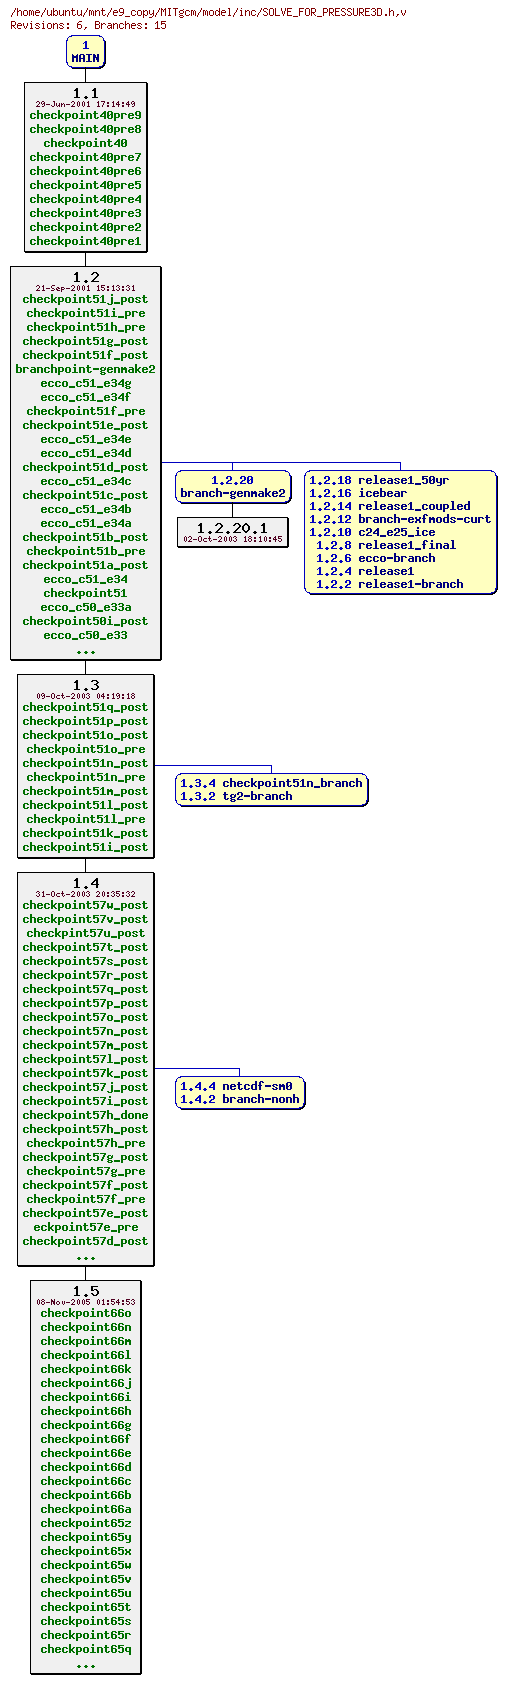 Revisions of MITgcm/model/inc/SOLVE_FOR_PRESSURE3D.h